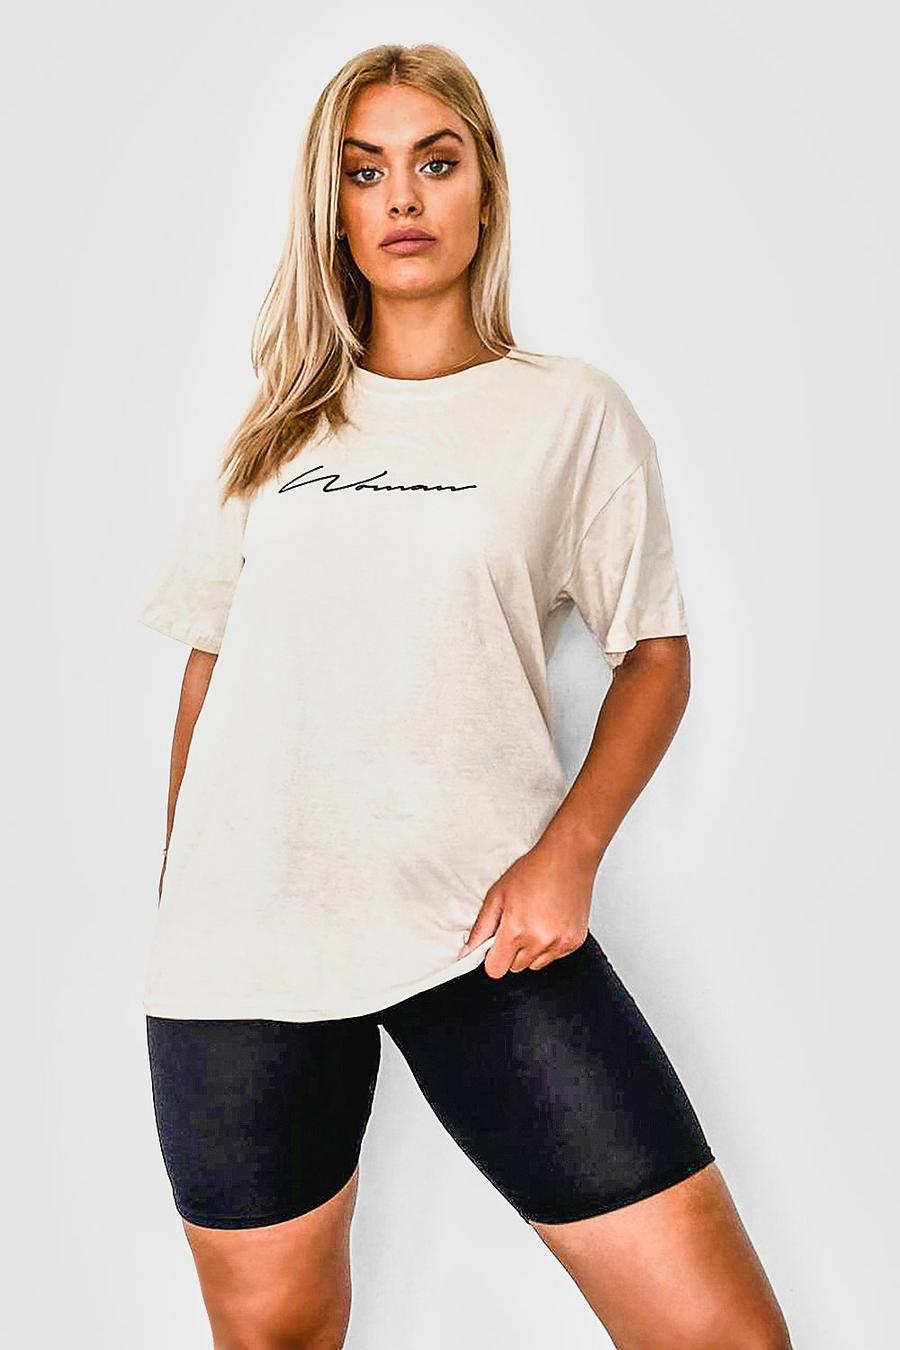 Ensemble t-shirt inscription Woman et short cycliste Plus, Roche image number 1